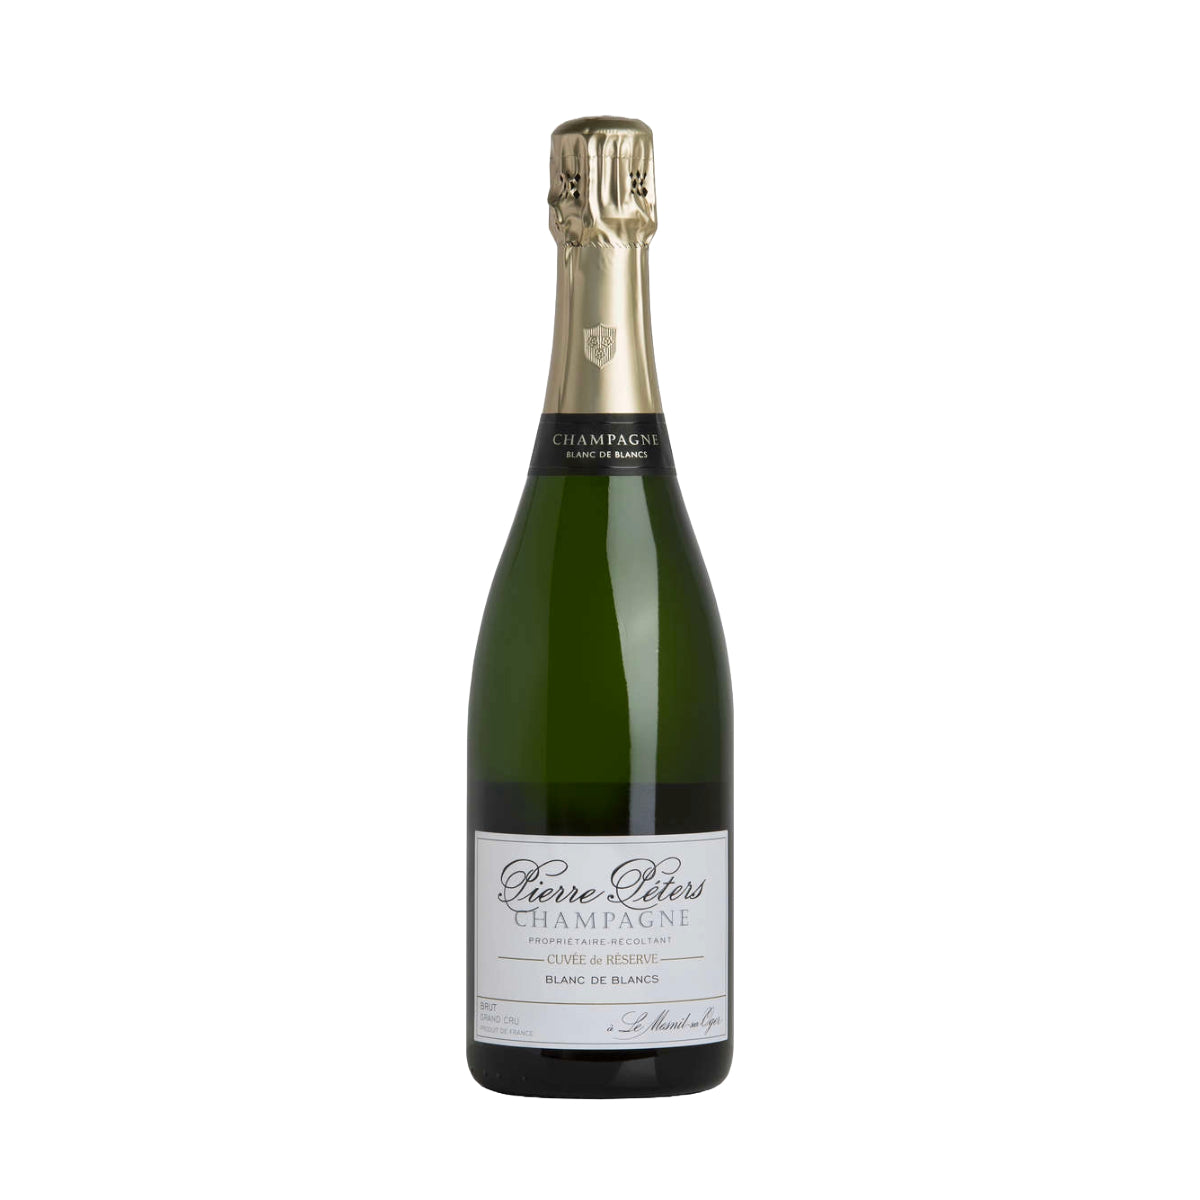 Champagne Pierre Peters Cuvee de Reserve Blanc de Blancs NV